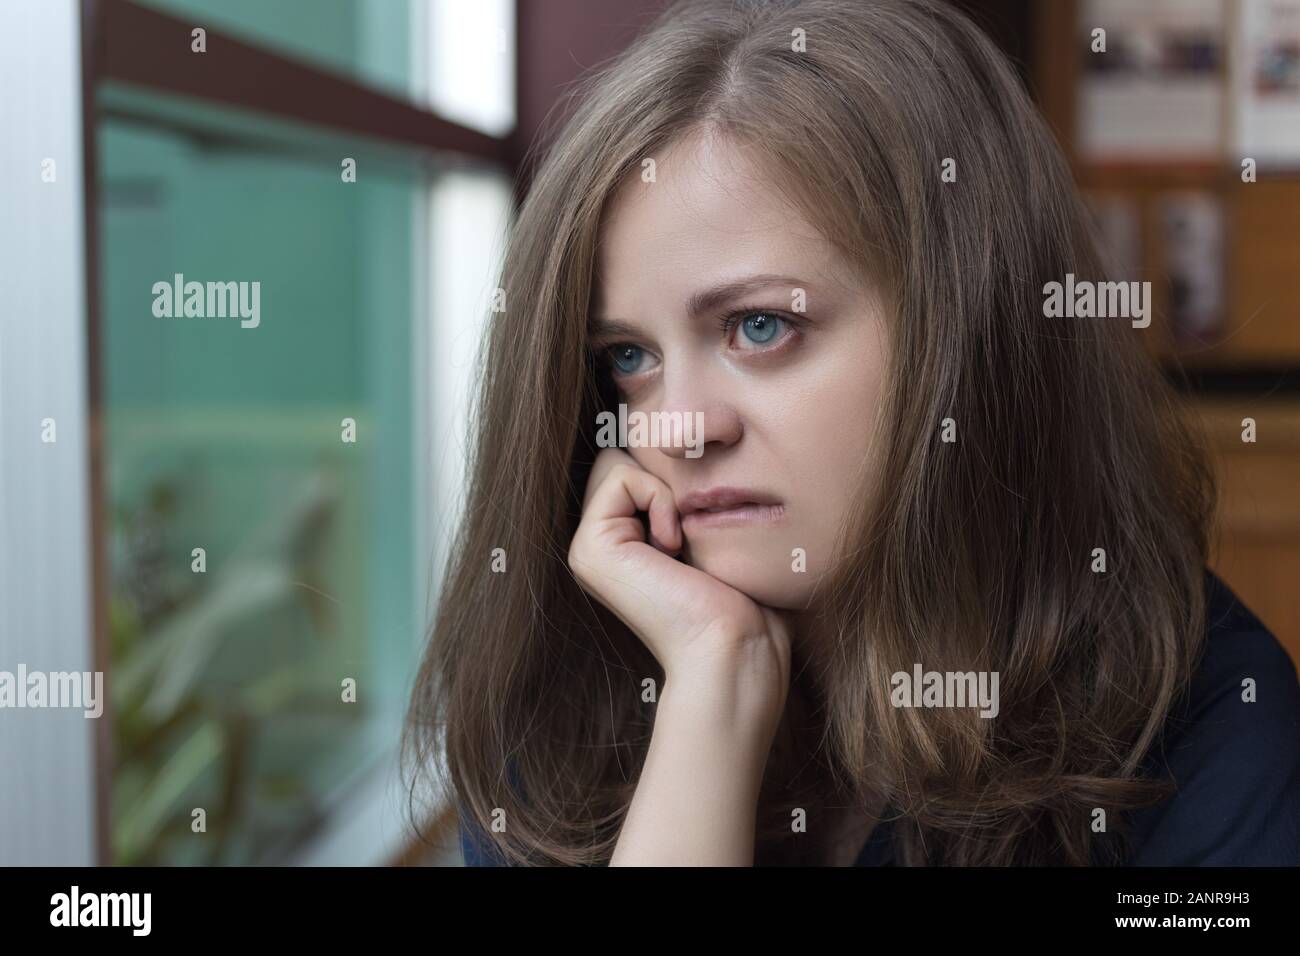 Weinende junge kaukasische Frau Mädchen sieht traurig, depressiv, verärgert oder unglücklich Stockfoto